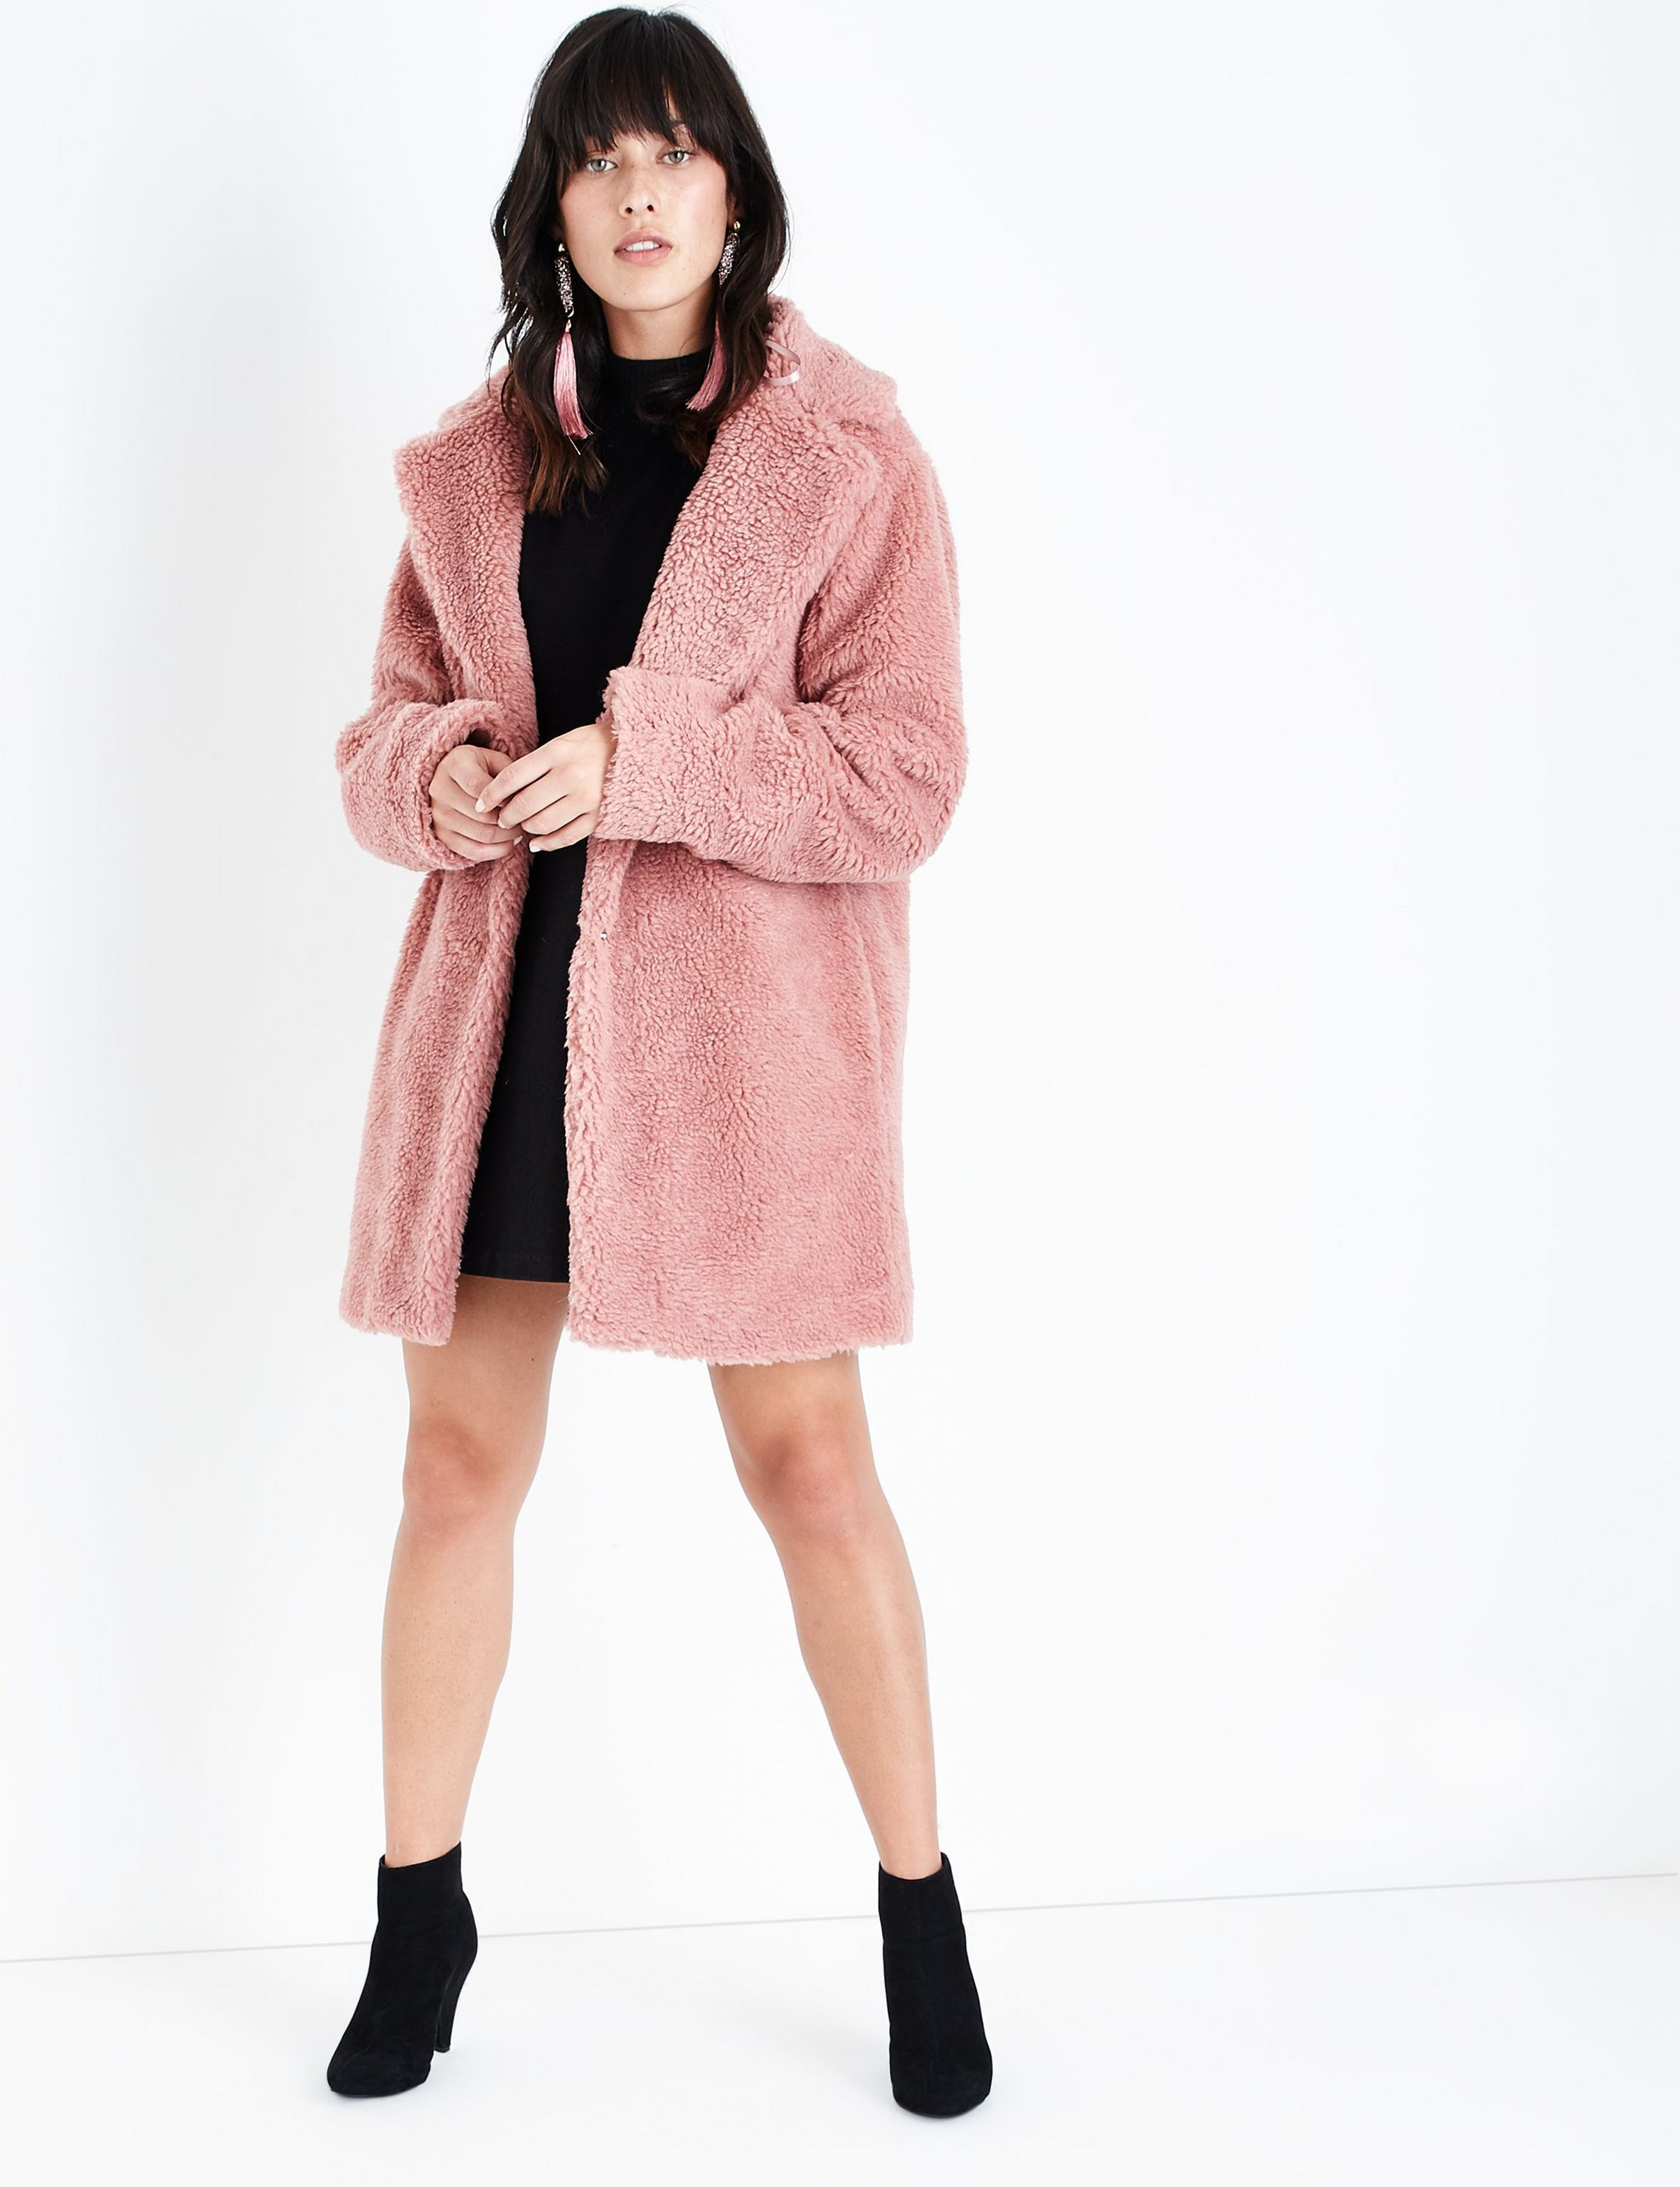 Manteau d'hiver en fourrure rose doux et confortable inspiré de